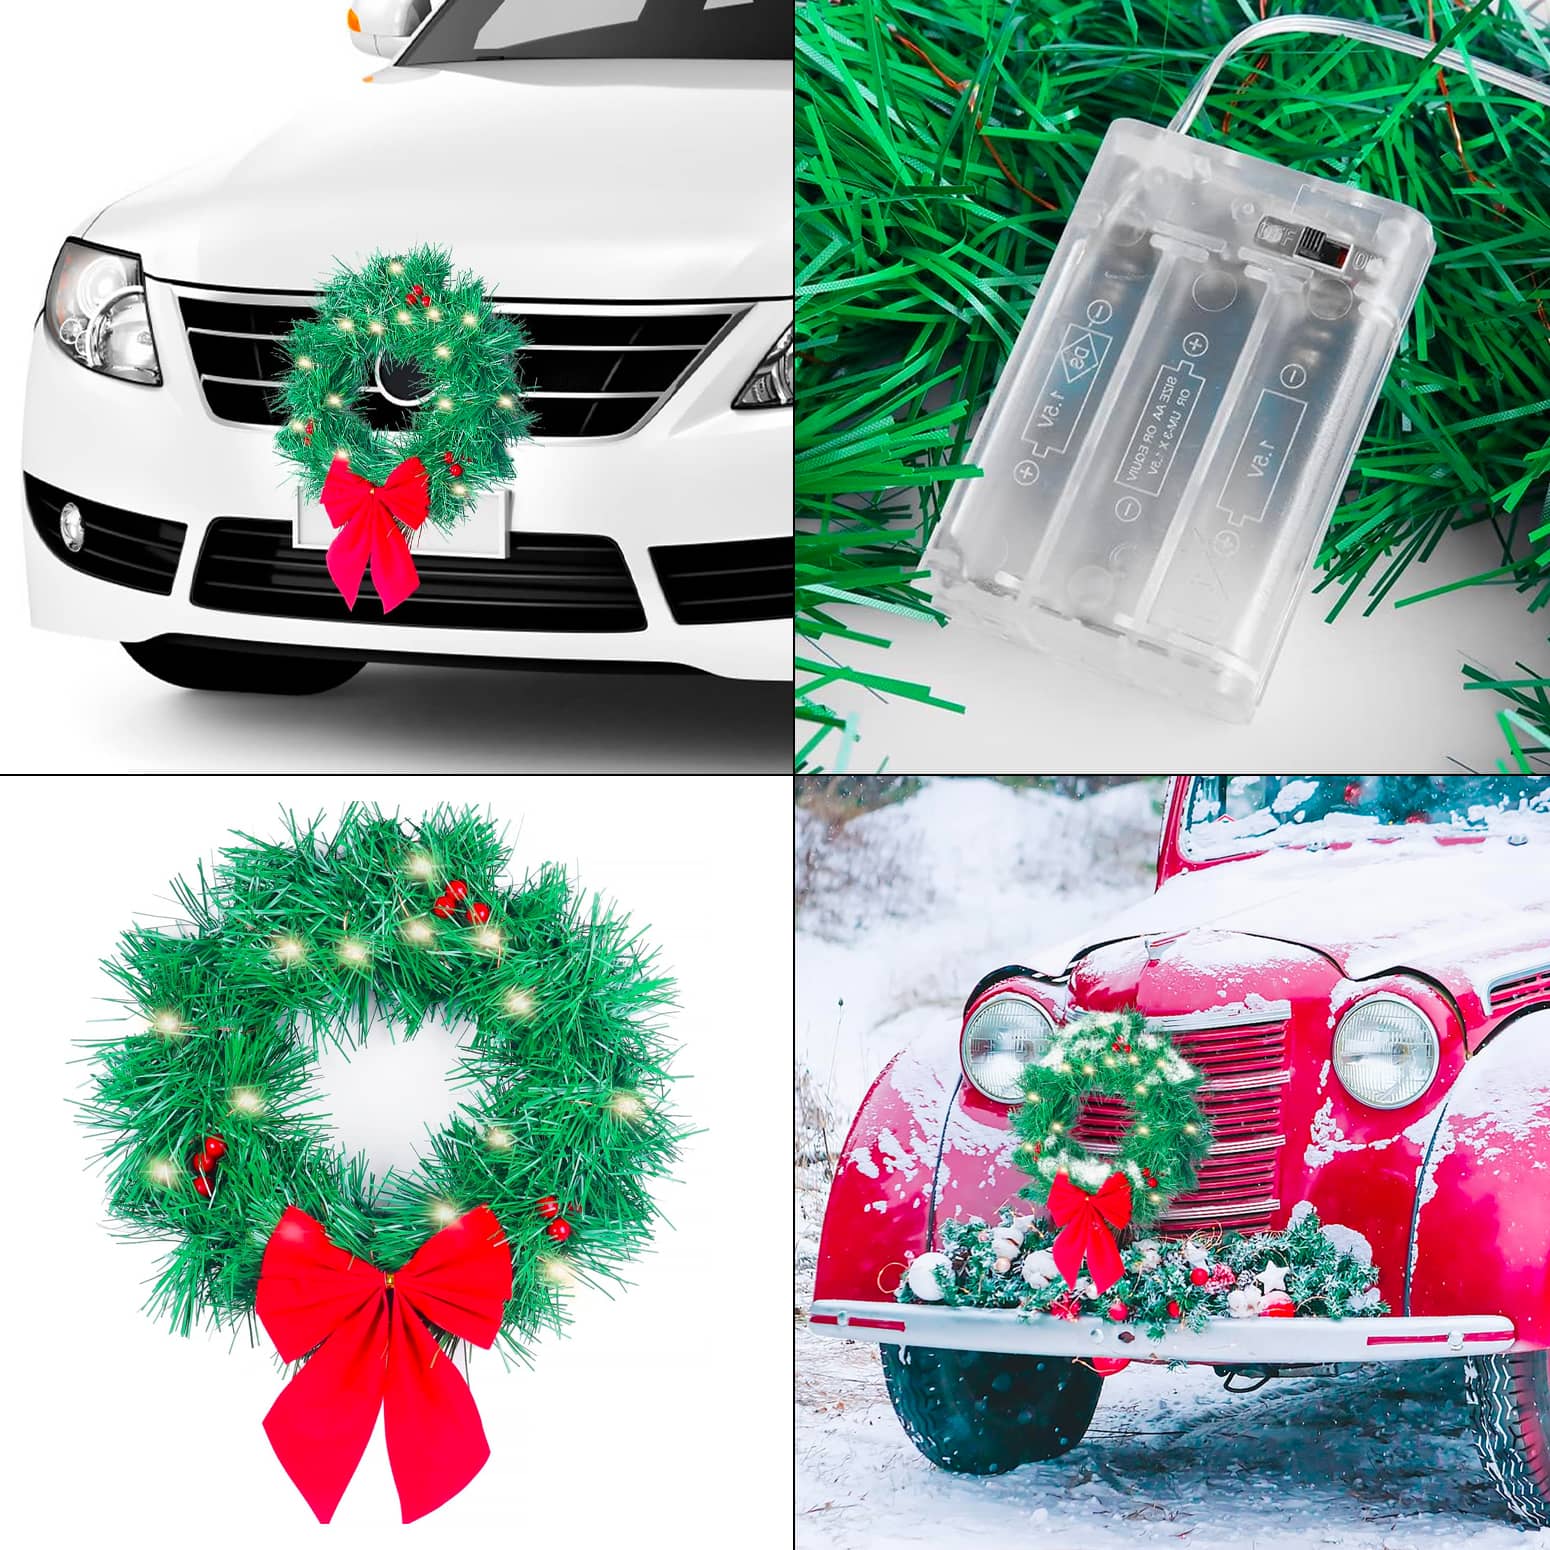 LED Illuminated Vehicle Christmas Wreath - Battery-Powered